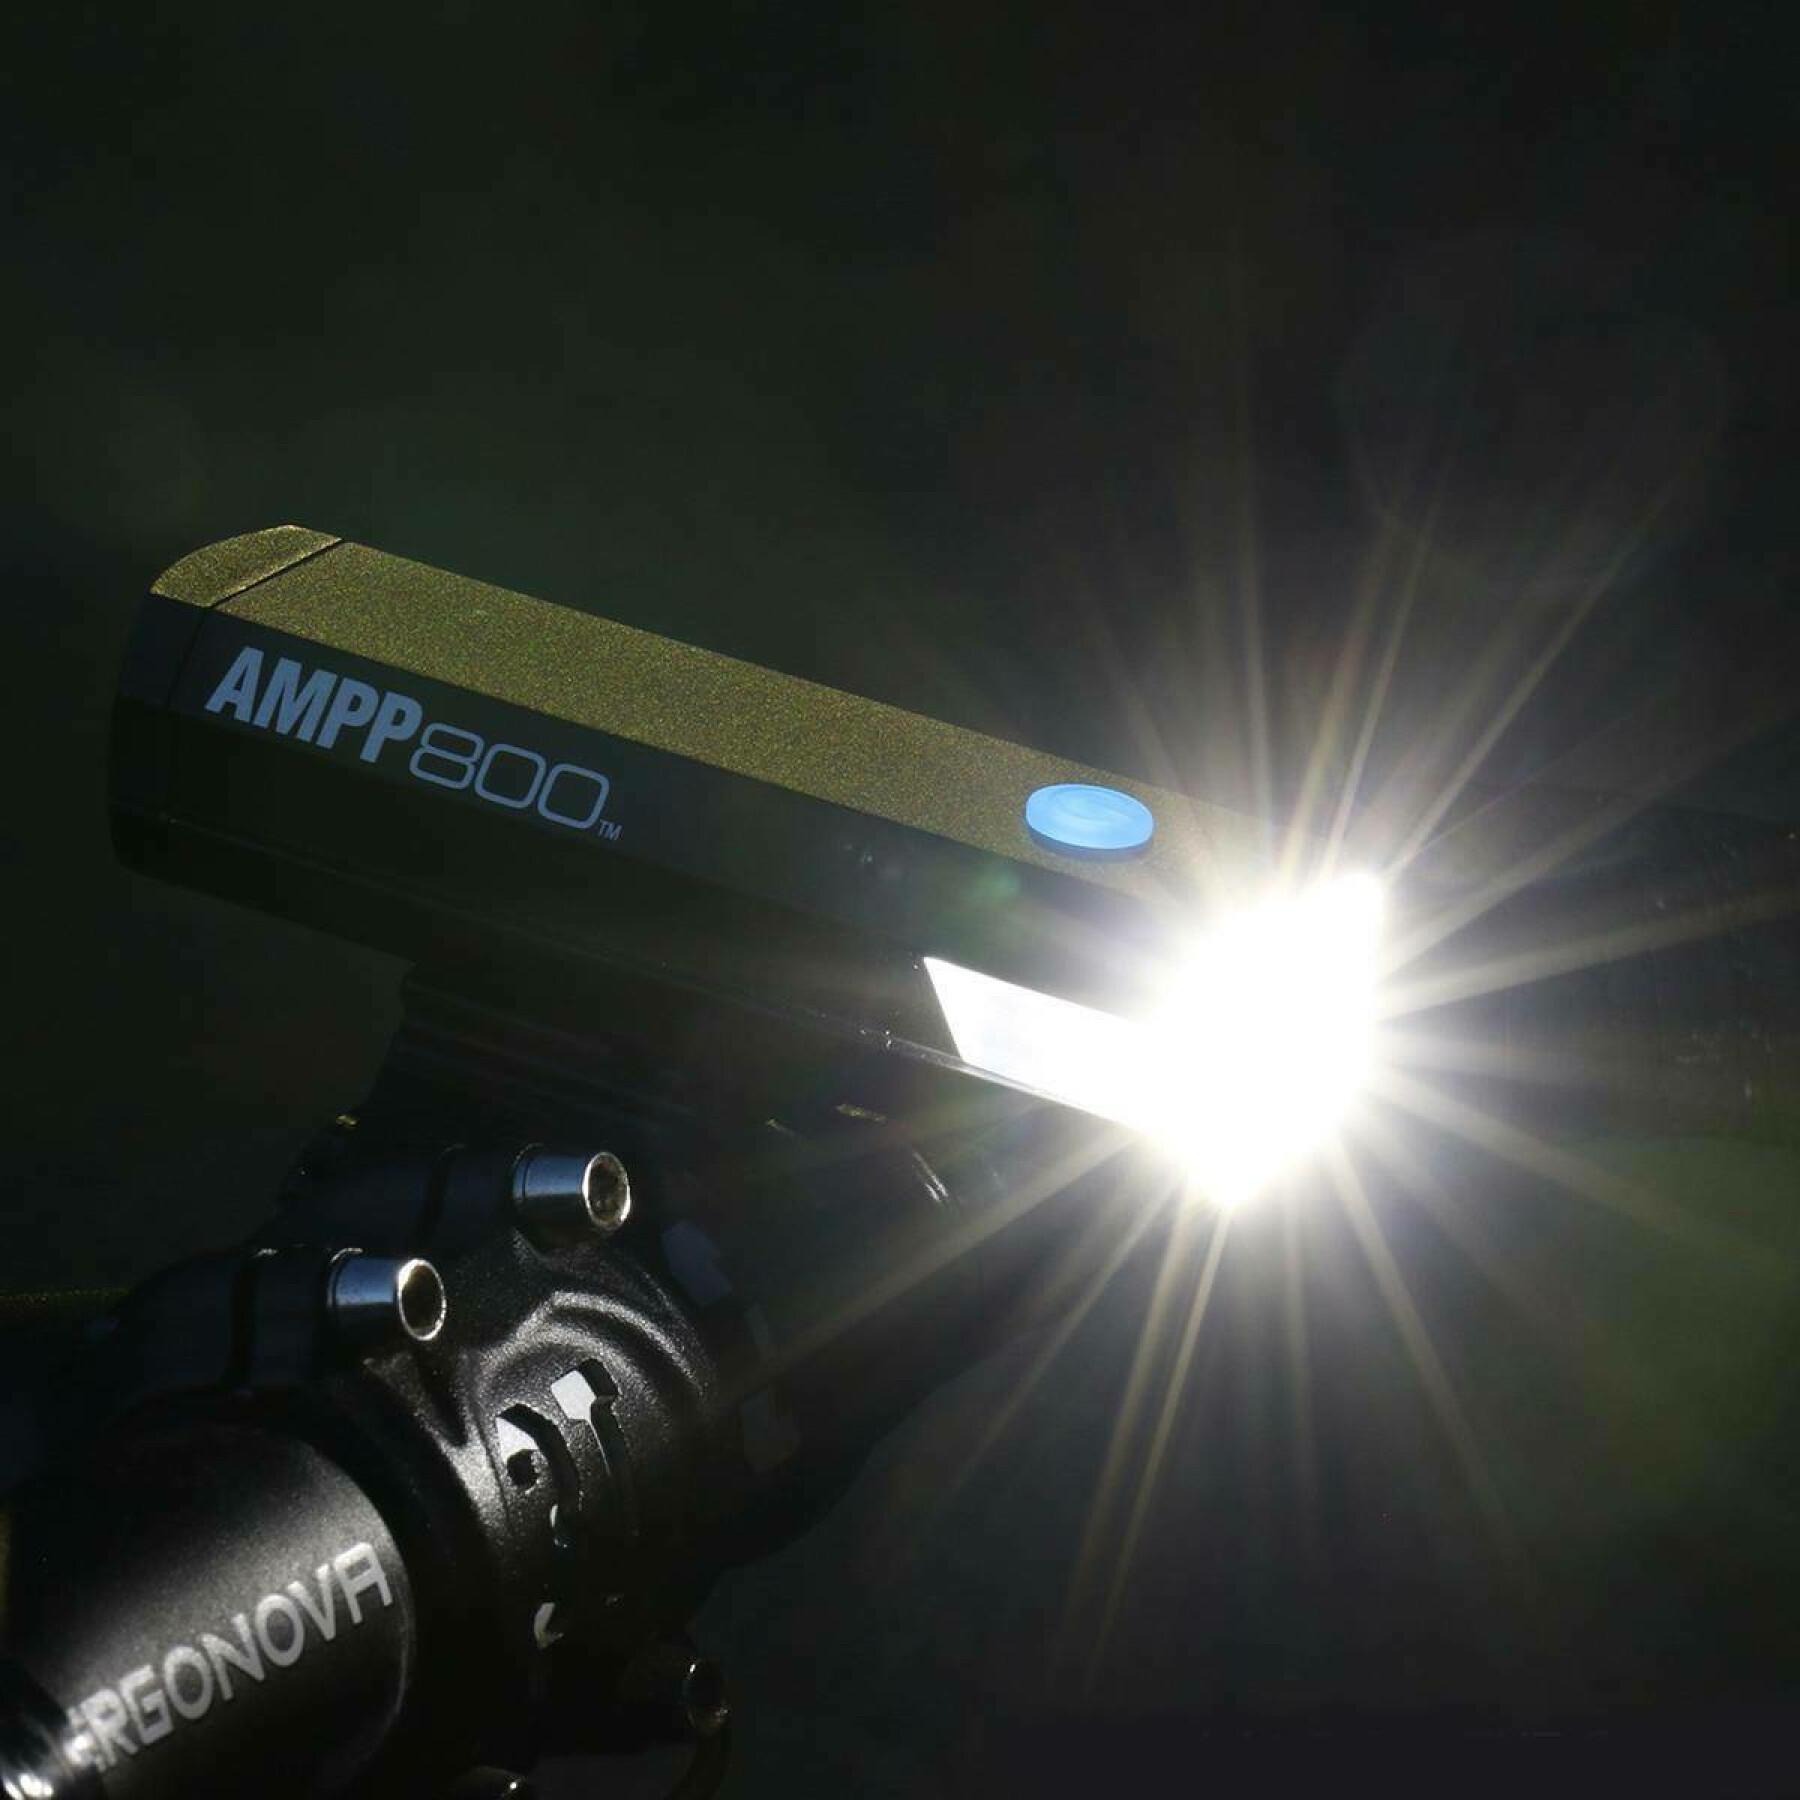 iluminação frontal Cateye Ampp 800